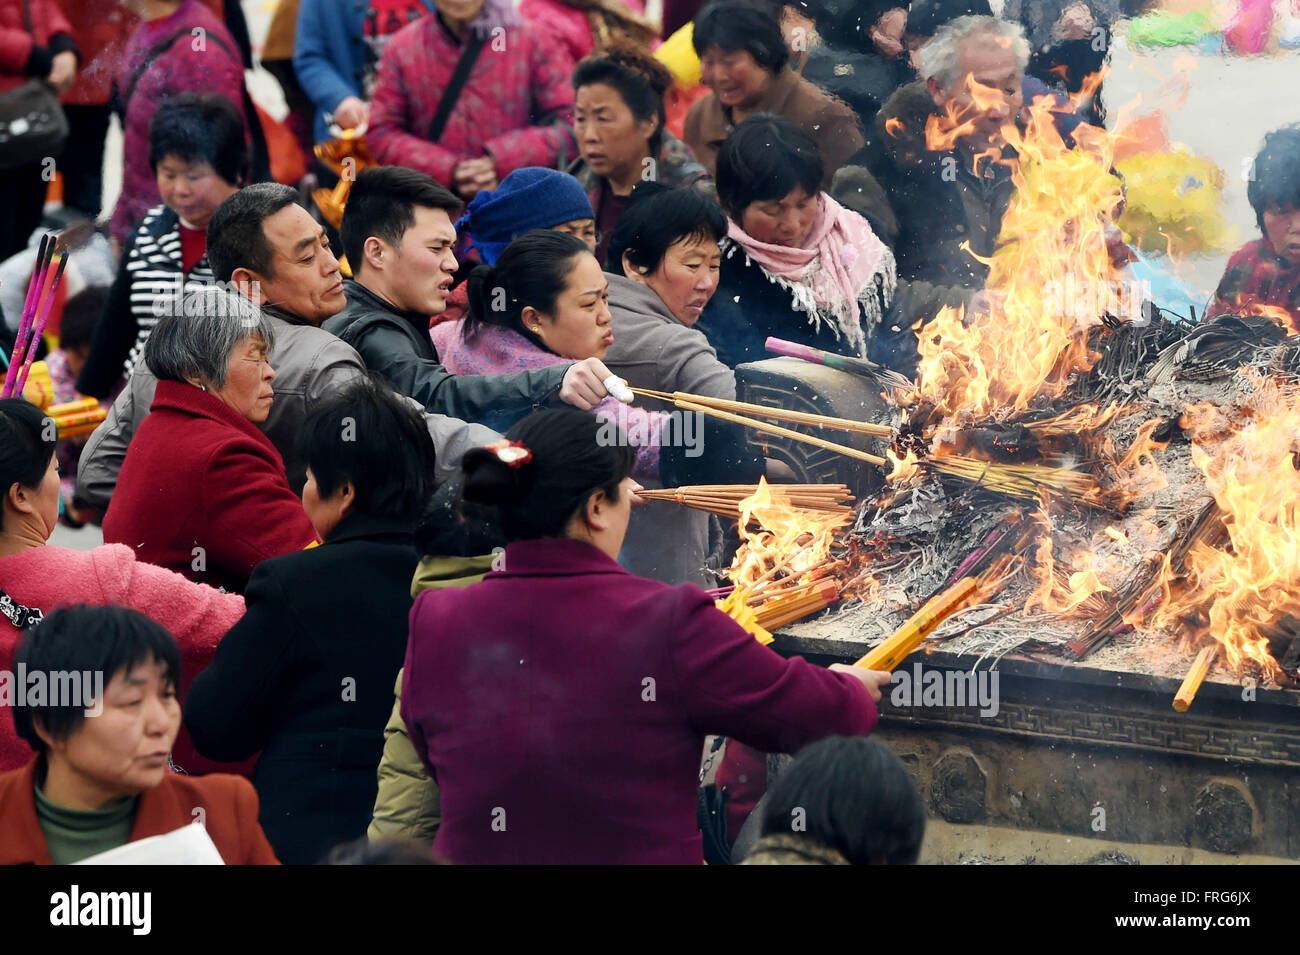 Luyi, province de Henan en Chine. Mar 23, 2016. Les gens brûlent de l'encens pour adorer Laozi ou Lao-tseu (Lao-tse, 604-531 avant J.-C.) au cours d'une cérémonie commémorative pour Laozi 2,587ème anniversaire de naissance au Palais Taiqing dans Luyi comté, la province du Henan en Chine centrale, le 23 mars 2016. Laozi, mieux connu comme l'auteur du Tao Te Ching, est traditionnellement considéré comme le fondateur du Taoïsme. © Li Bo/Xinhua/Alamy Live News Banque D'Images